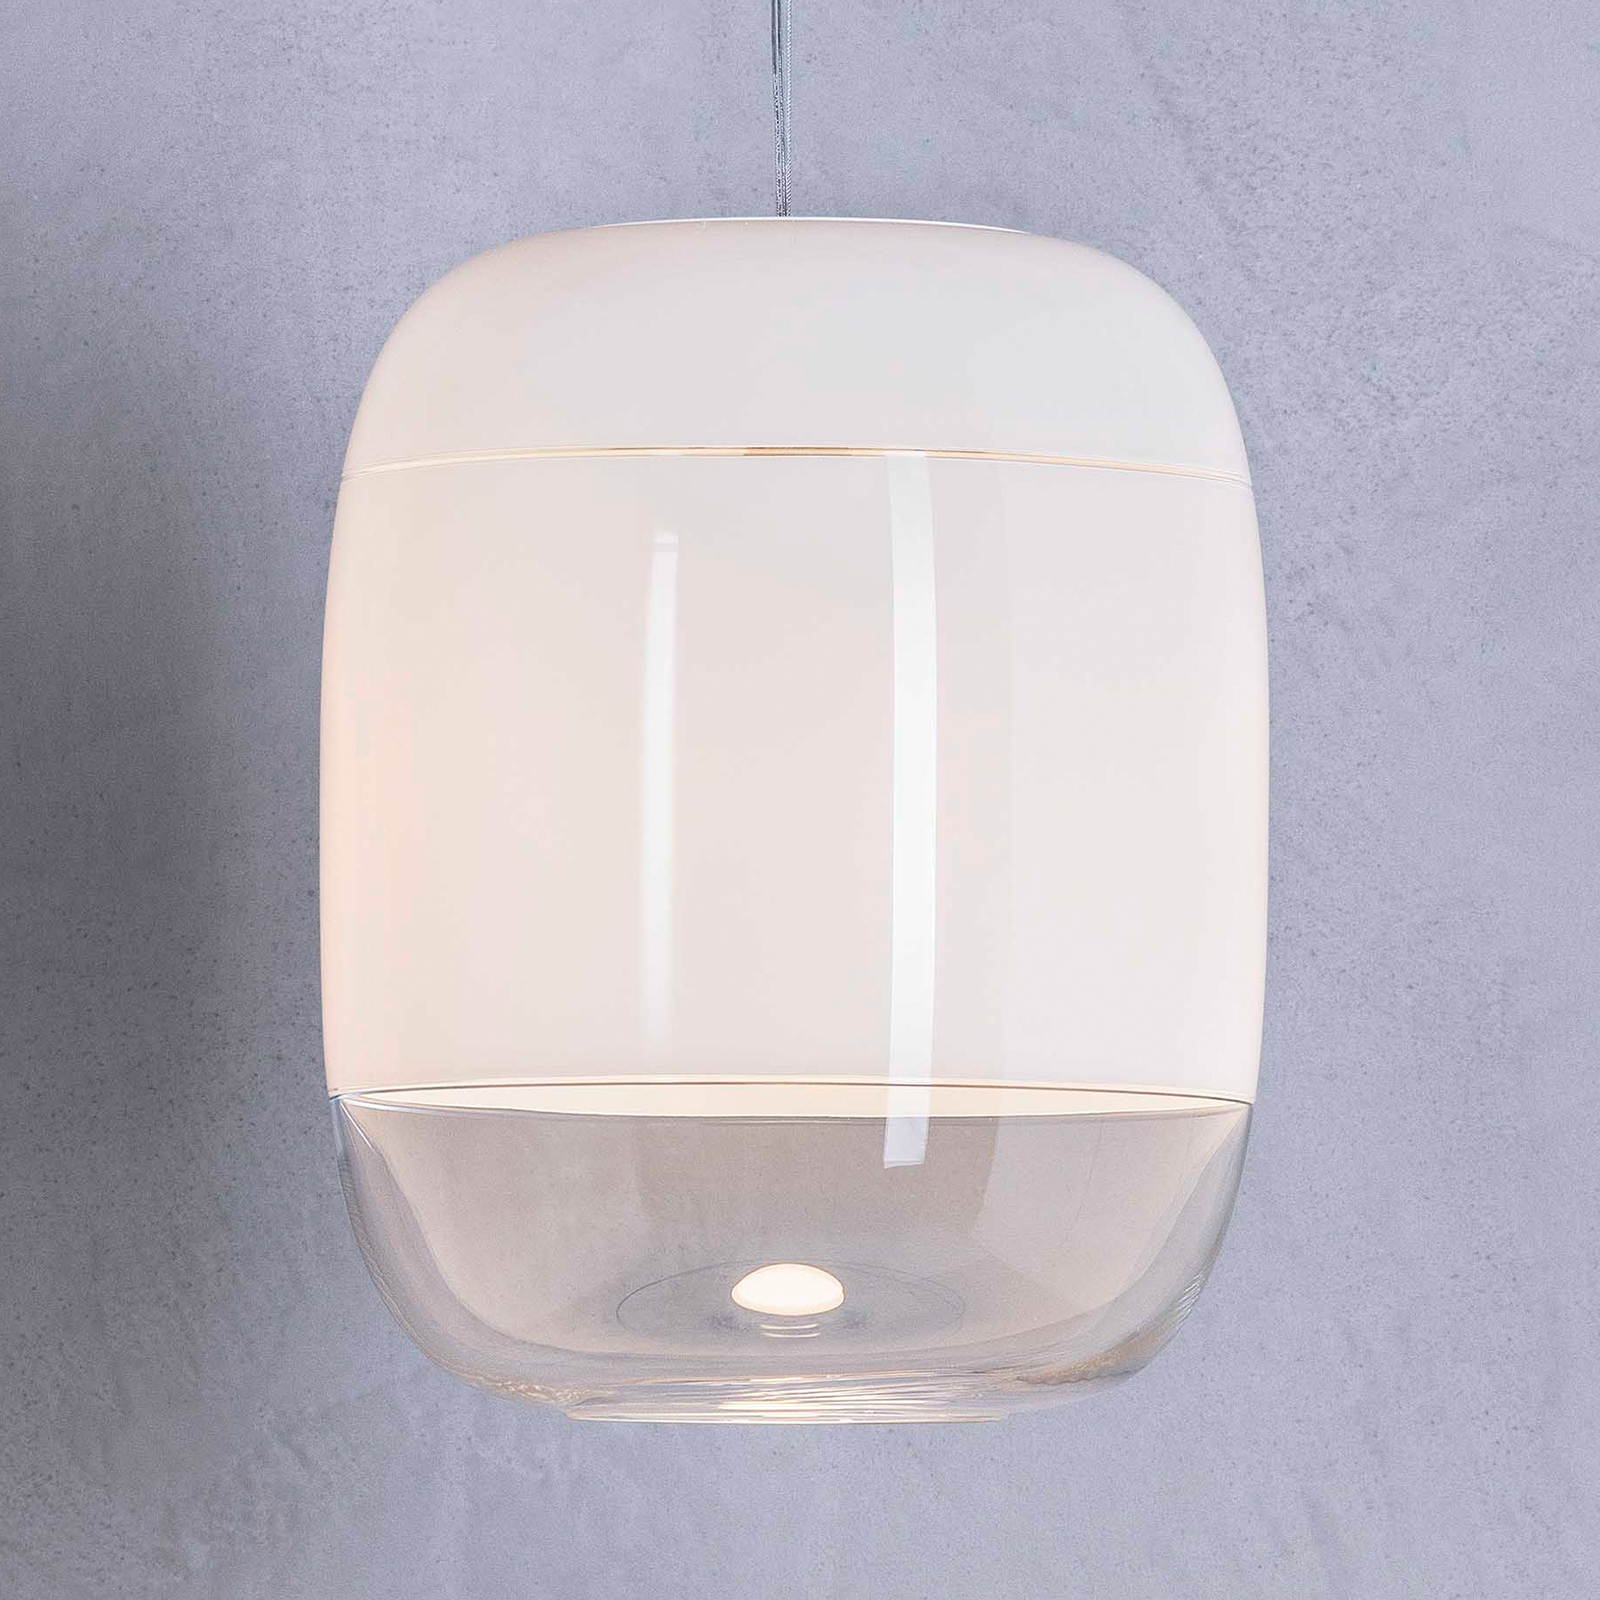 Prandina Gong S3 lampa wisząca biała